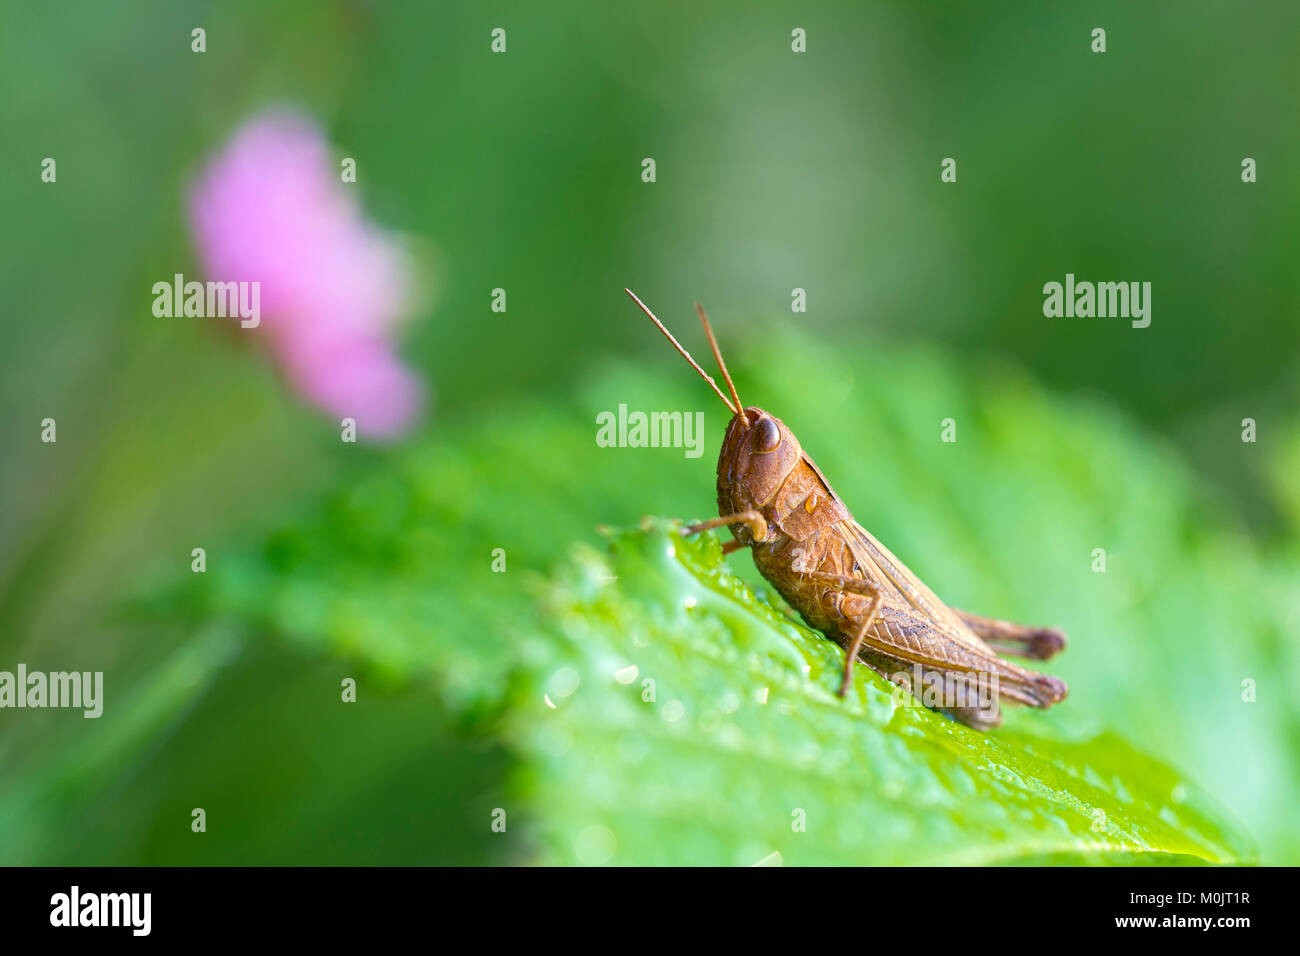 Grasshopper (Chorthippus dorsatus), Schwaz, Tyrol, Austria Stock Photo